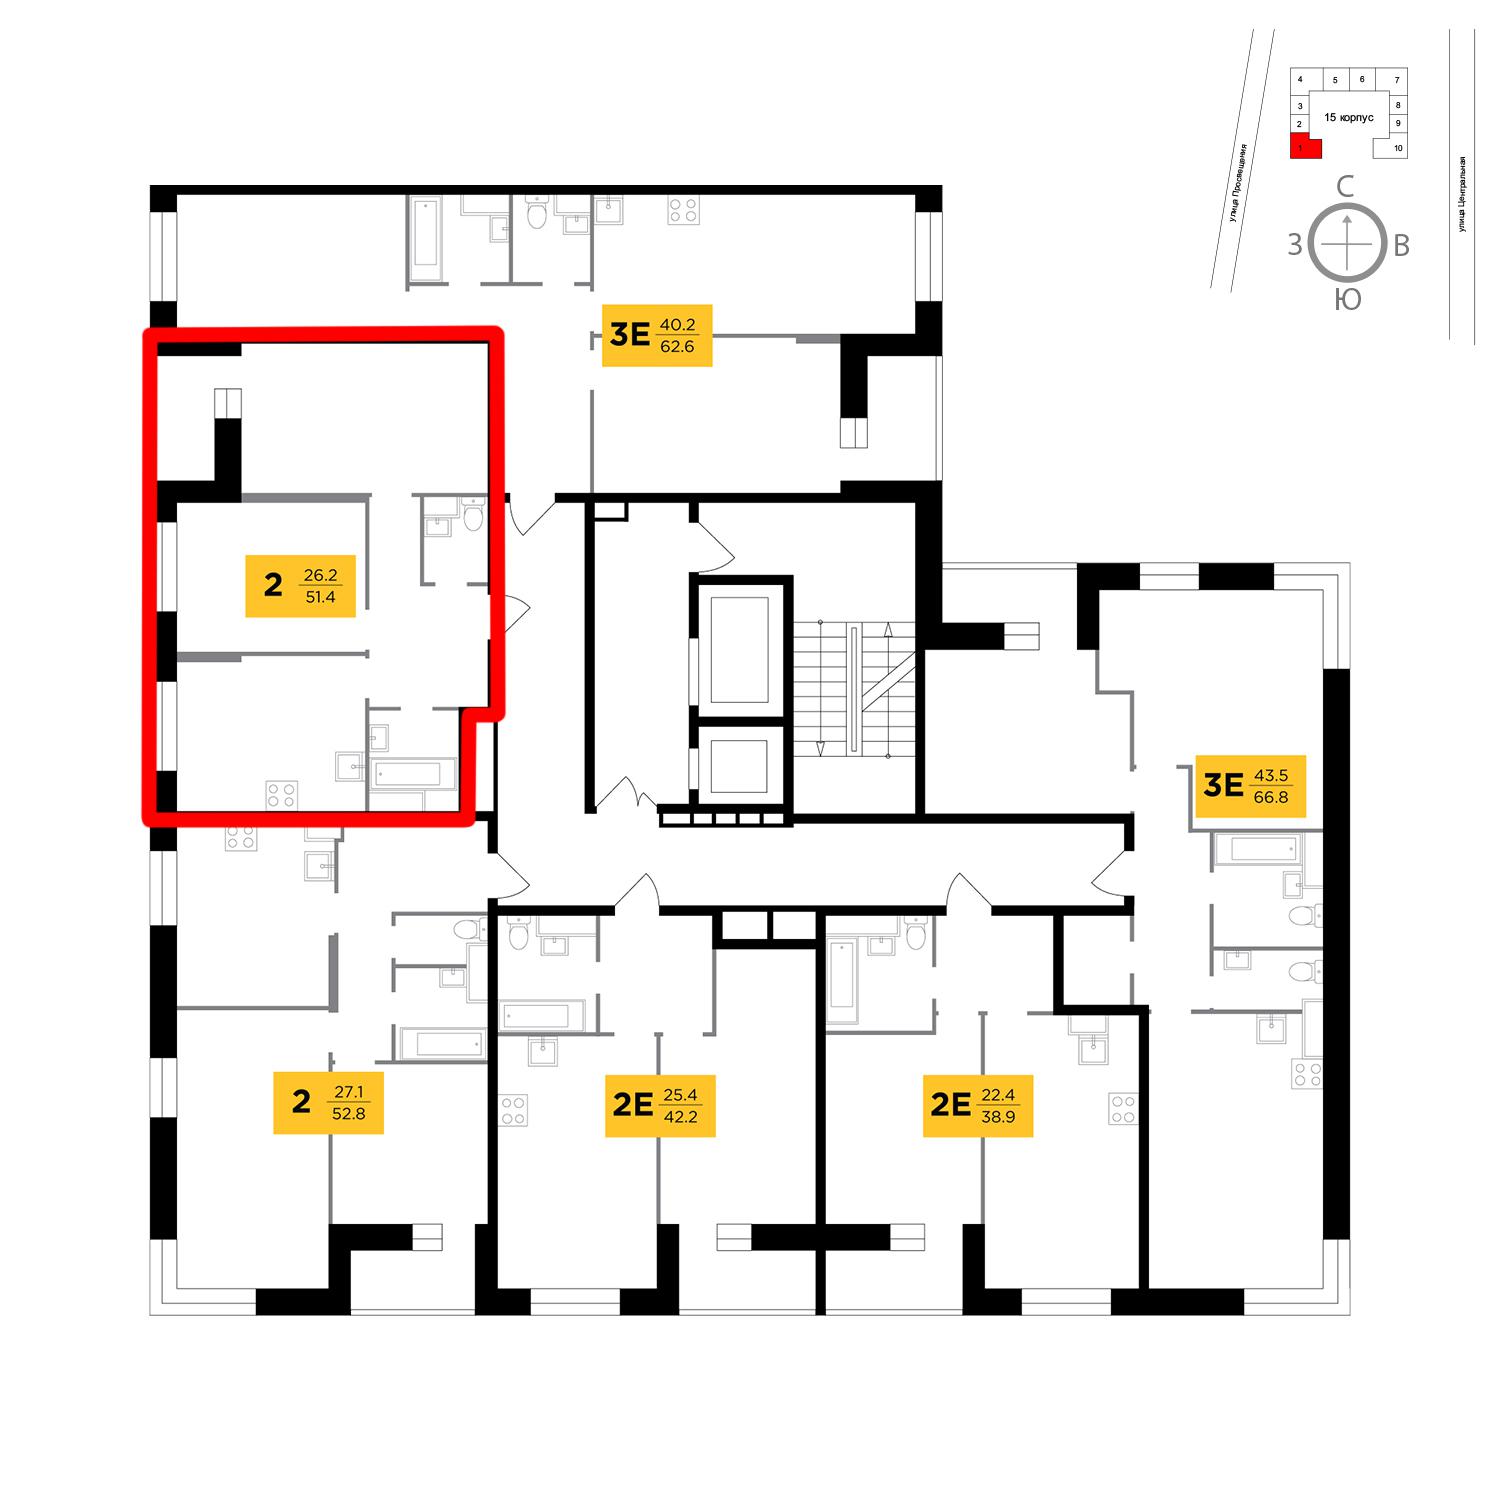 Продаётся 2-комнатная квартира в новостройке 51.4 кв.м. этаж 8/16 за 4 102 593 руб 